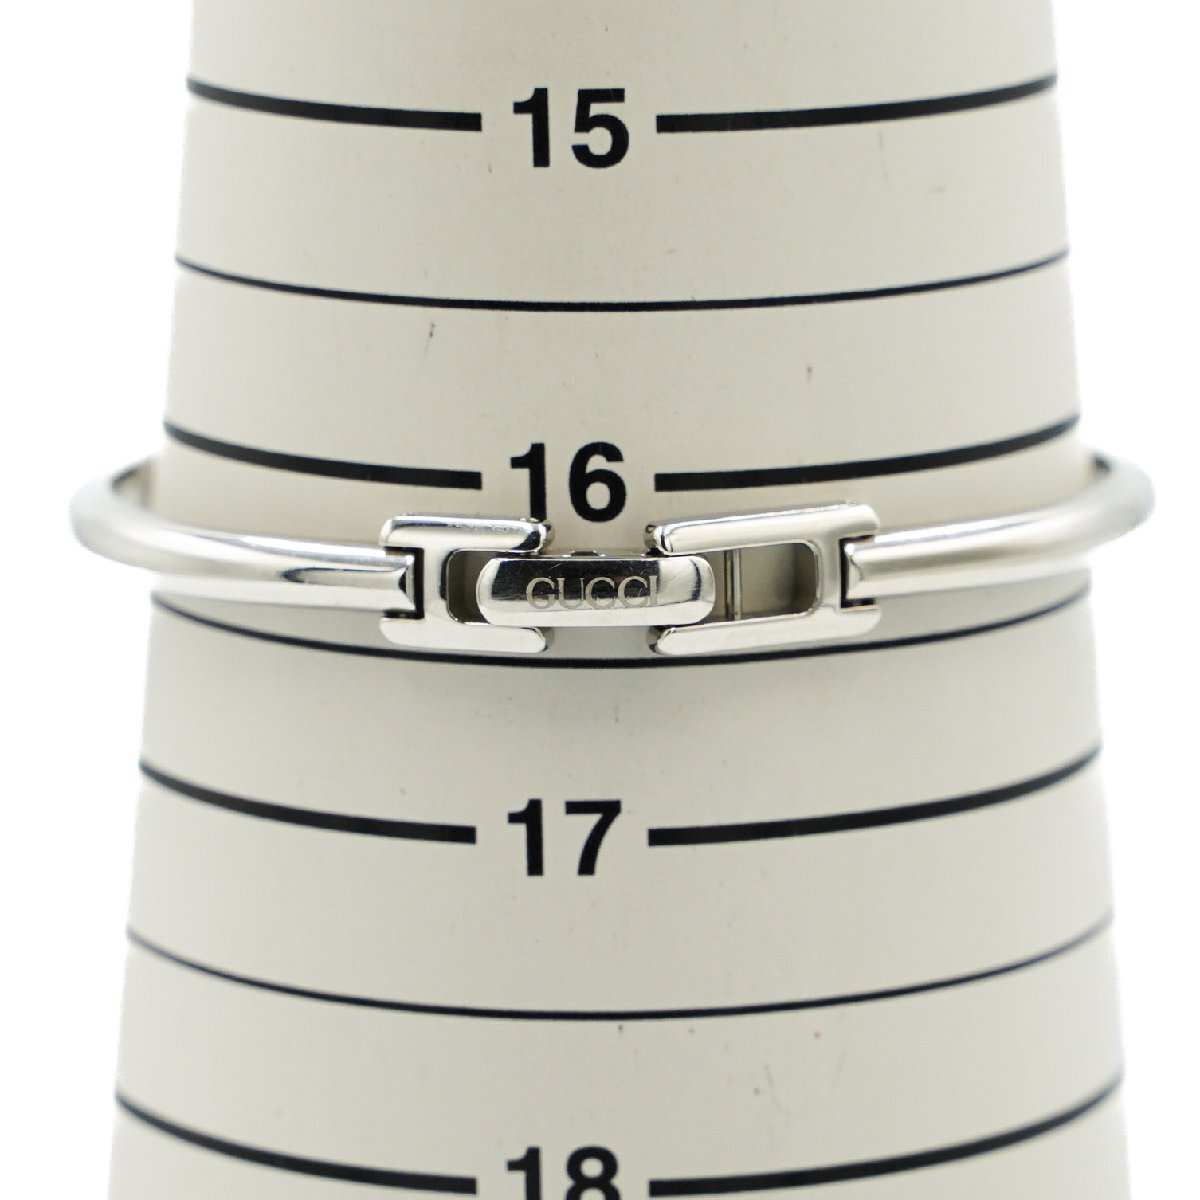 1 иен коробка / с гарантией GUCCI Gucci 1900L браслет часы QZ кварц серебряный серебряный циферблат SS женские наручные часы квадратное 335420240507